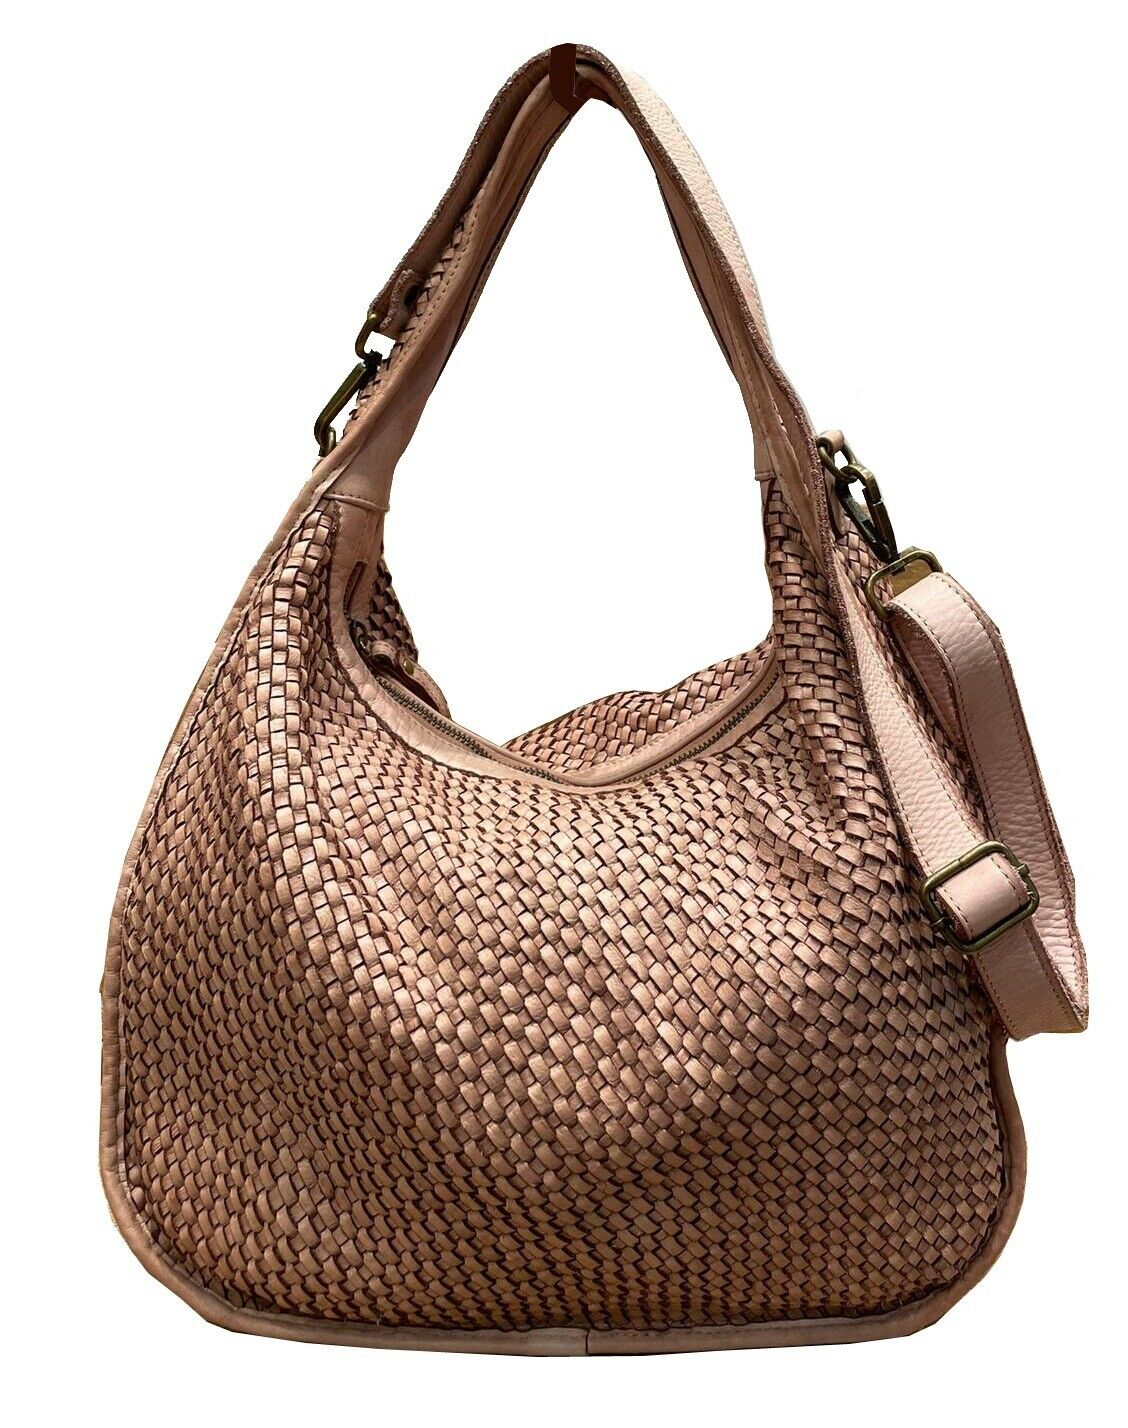 BZNA Bag Sanna Grau Italy Designer Handtasche Schultertasche Tasche Leder